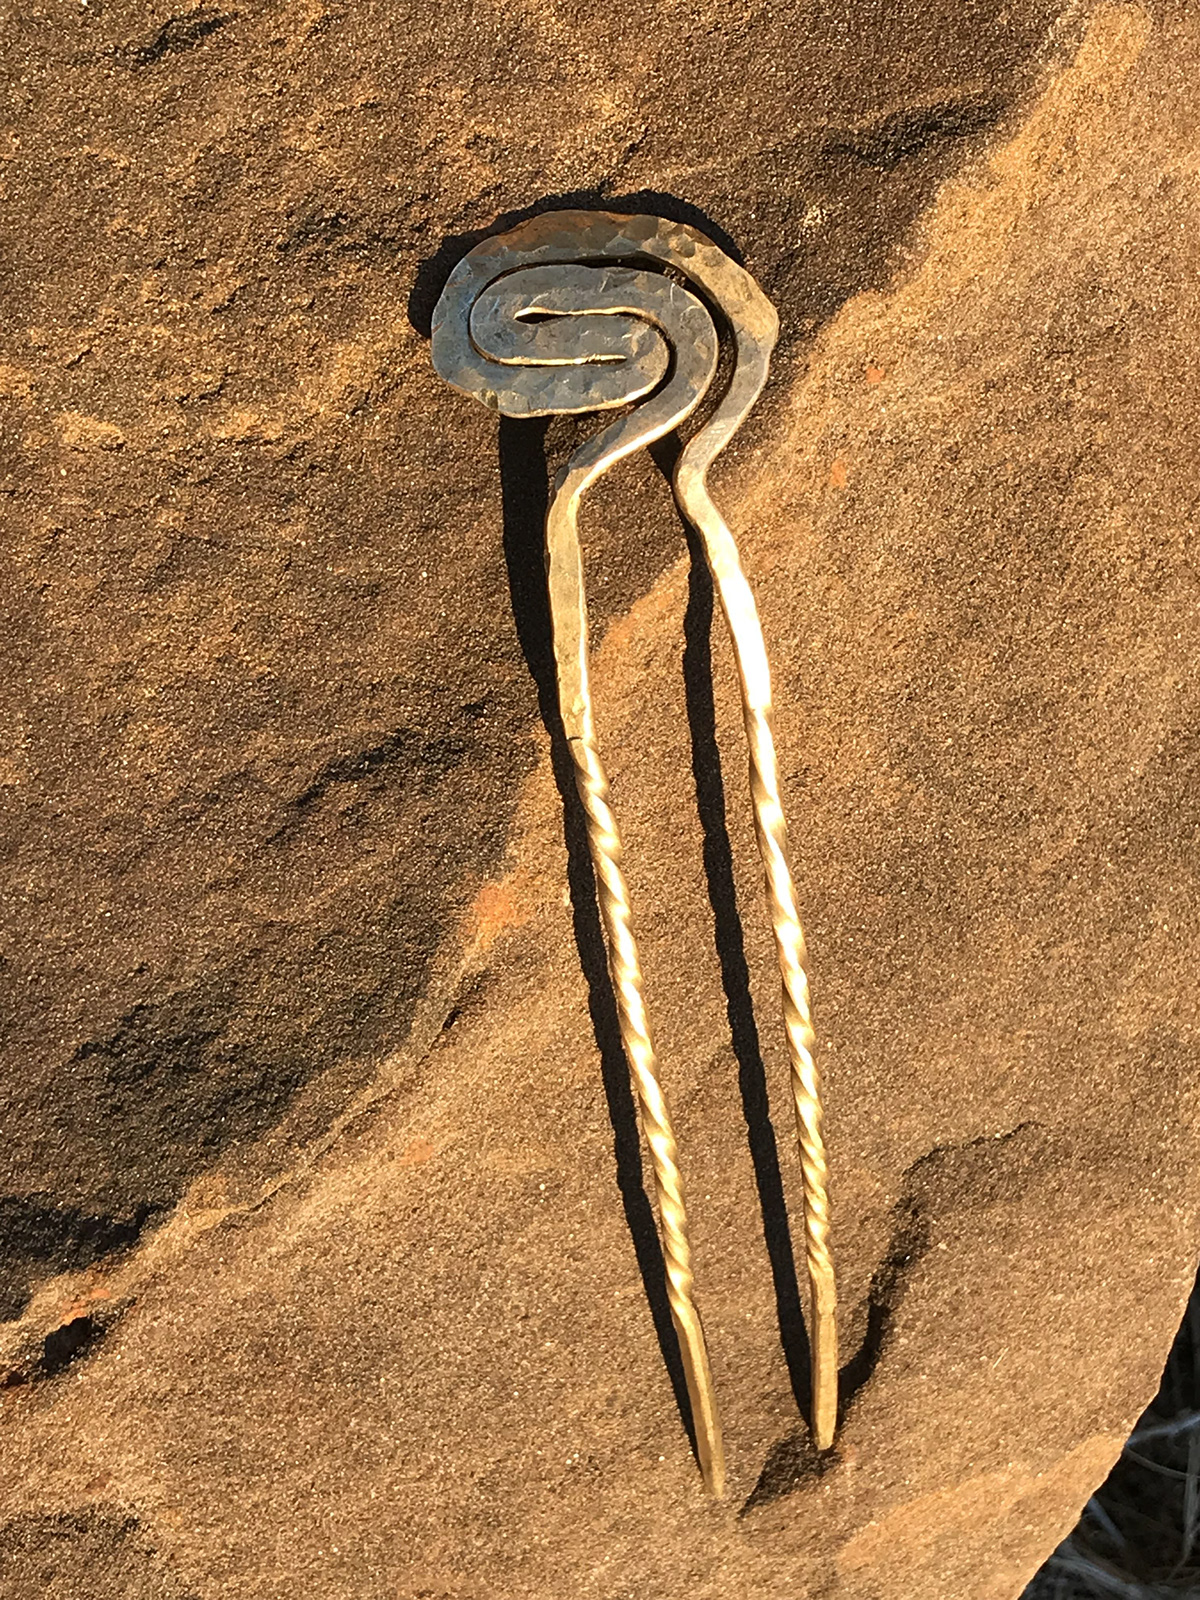 brass brass wire craft ear cuff earrings Hairpin hammer handmade jewelry metal